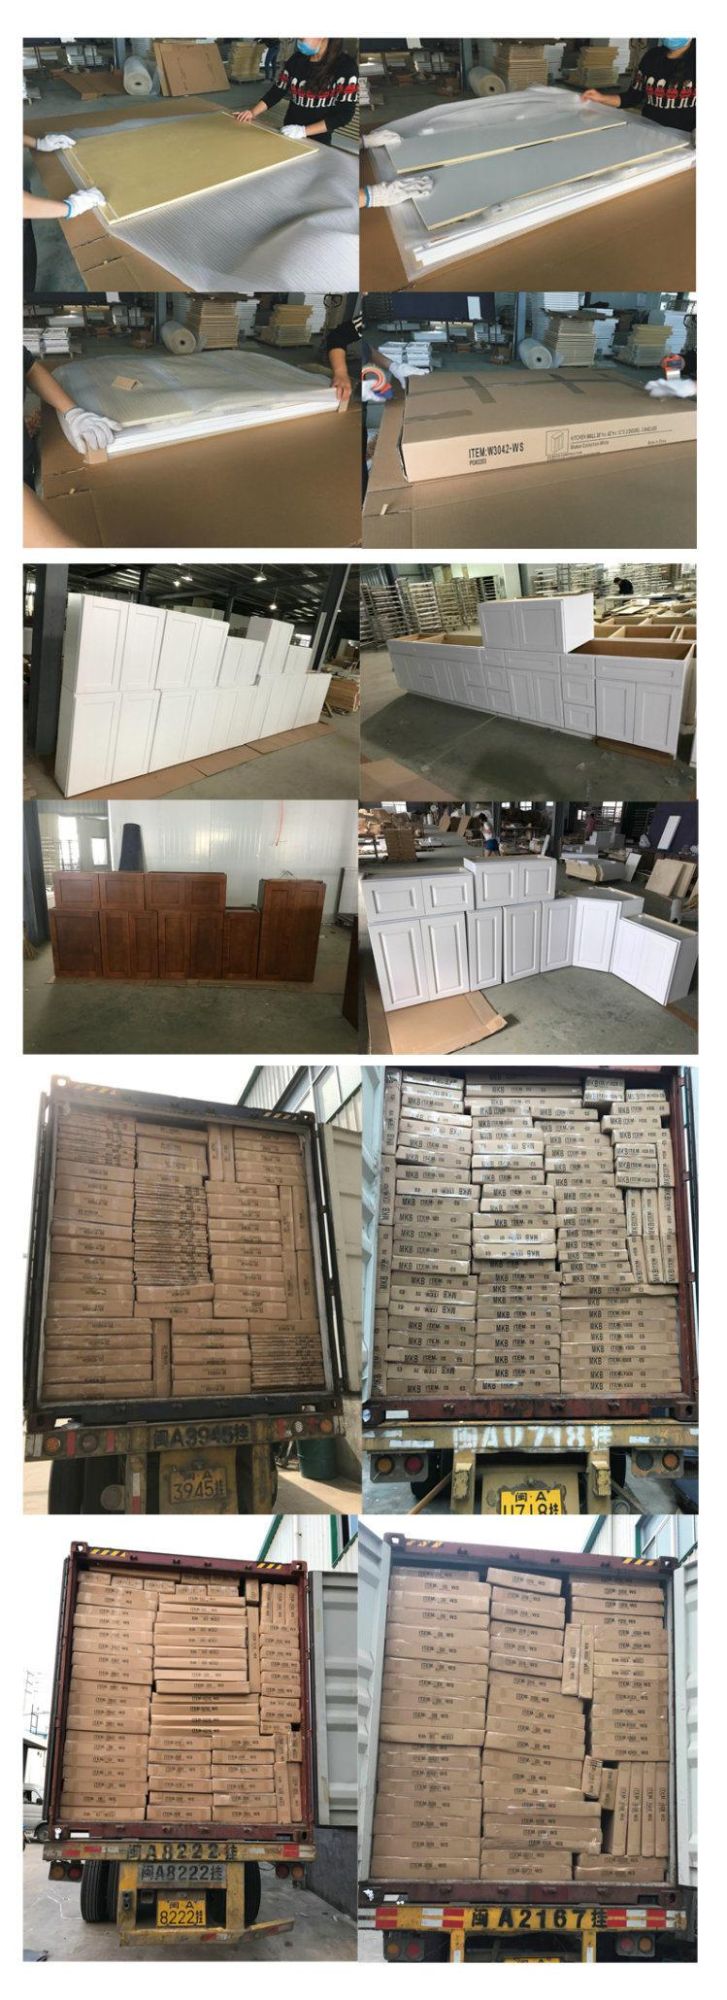 Fuzhou China Fixed Cabinext Kd (Flat-Packed) White Shaker Kitchen Cabinets Wardrobe